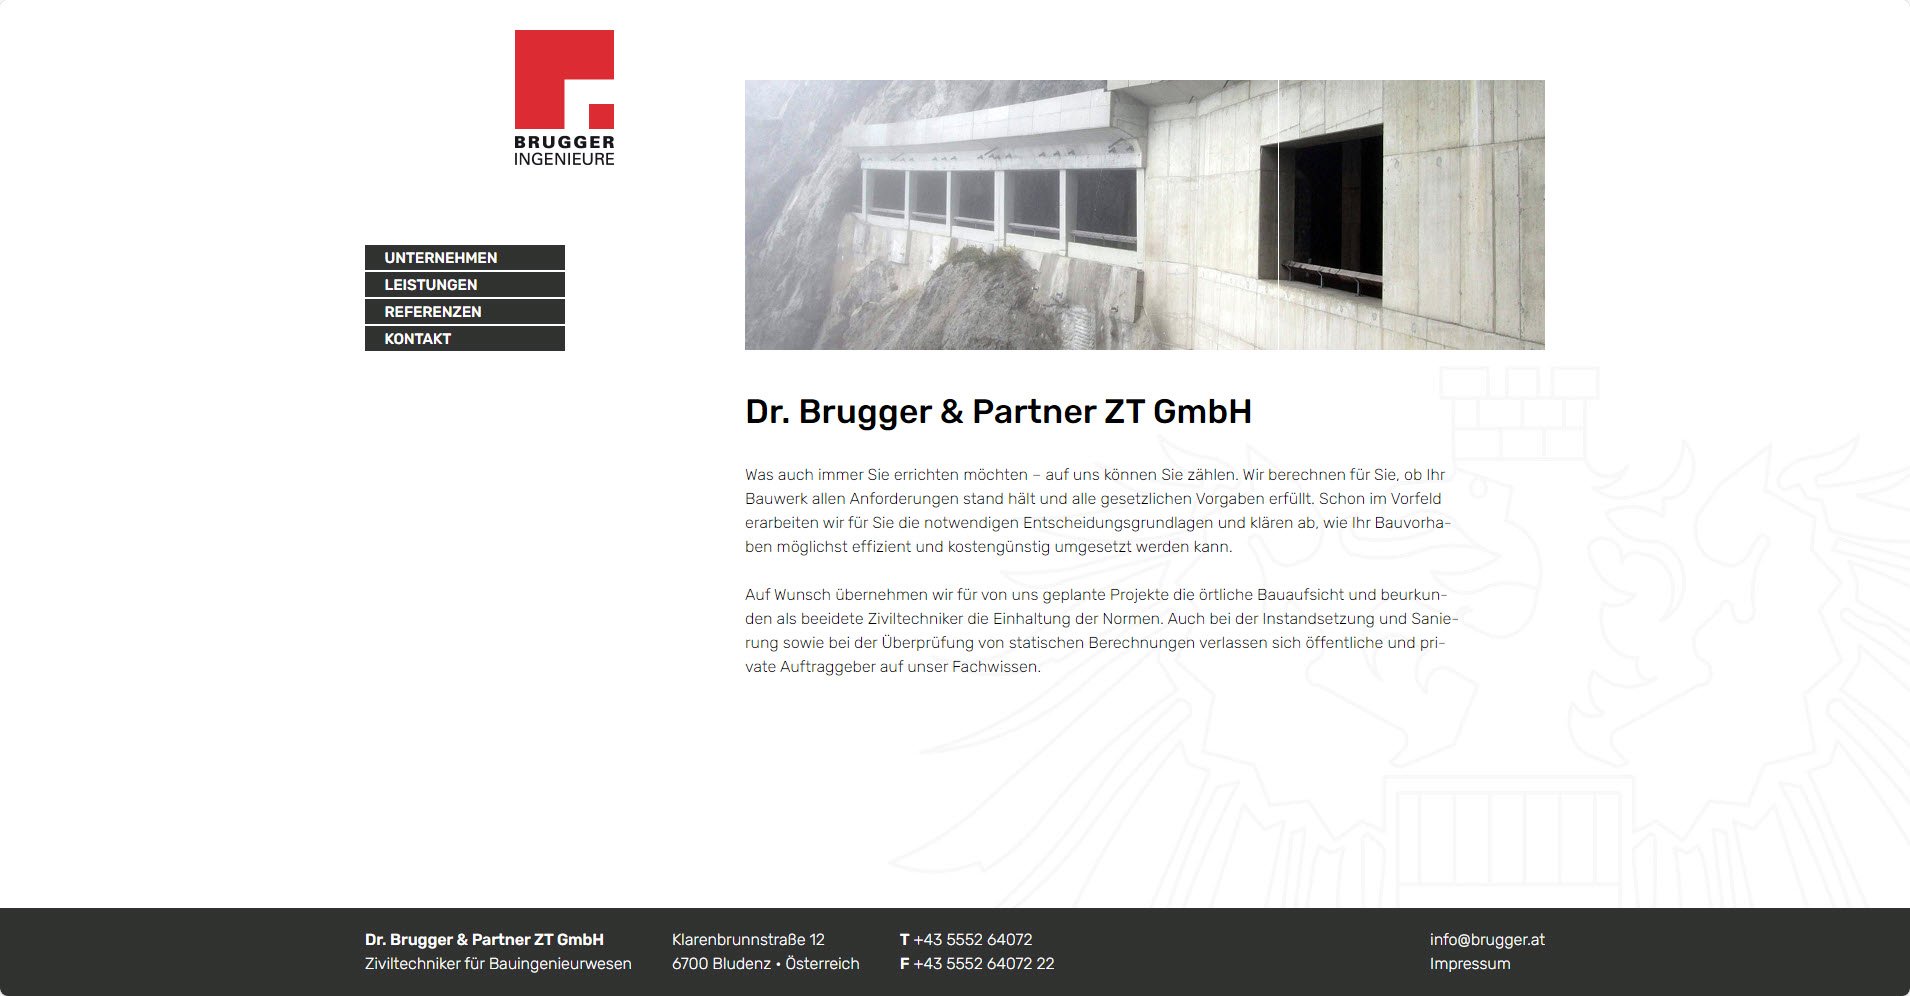 Dr. Brugger & Partner ZT GmbH